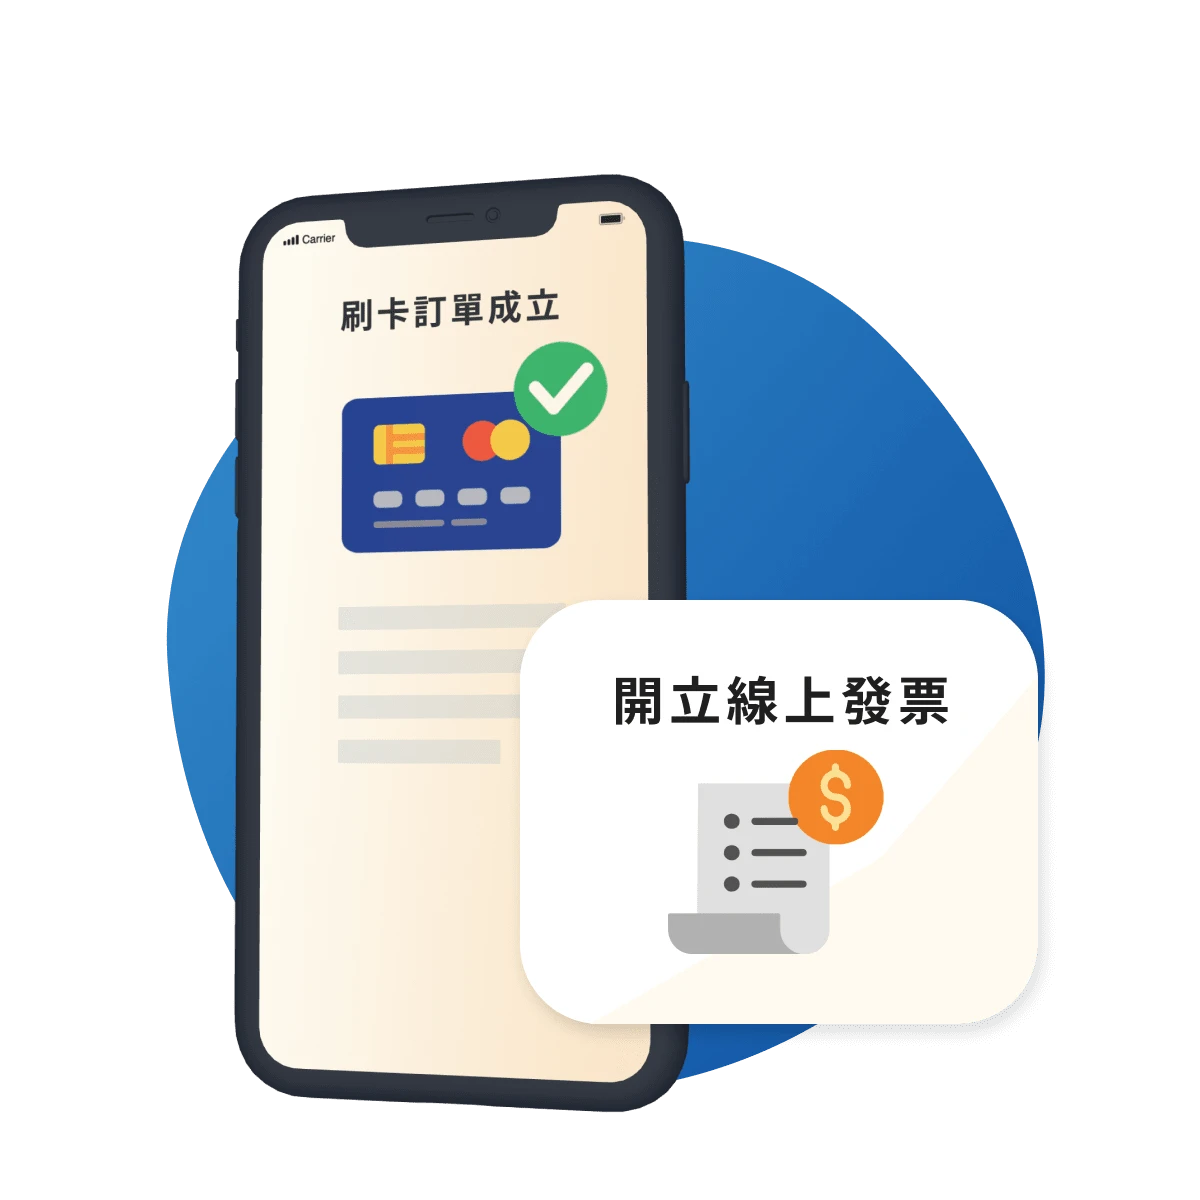 品牌可透過線上支付提供便利的購物體驗，並於信用卡支付後，線上開立發票給消費者。By WishMobile